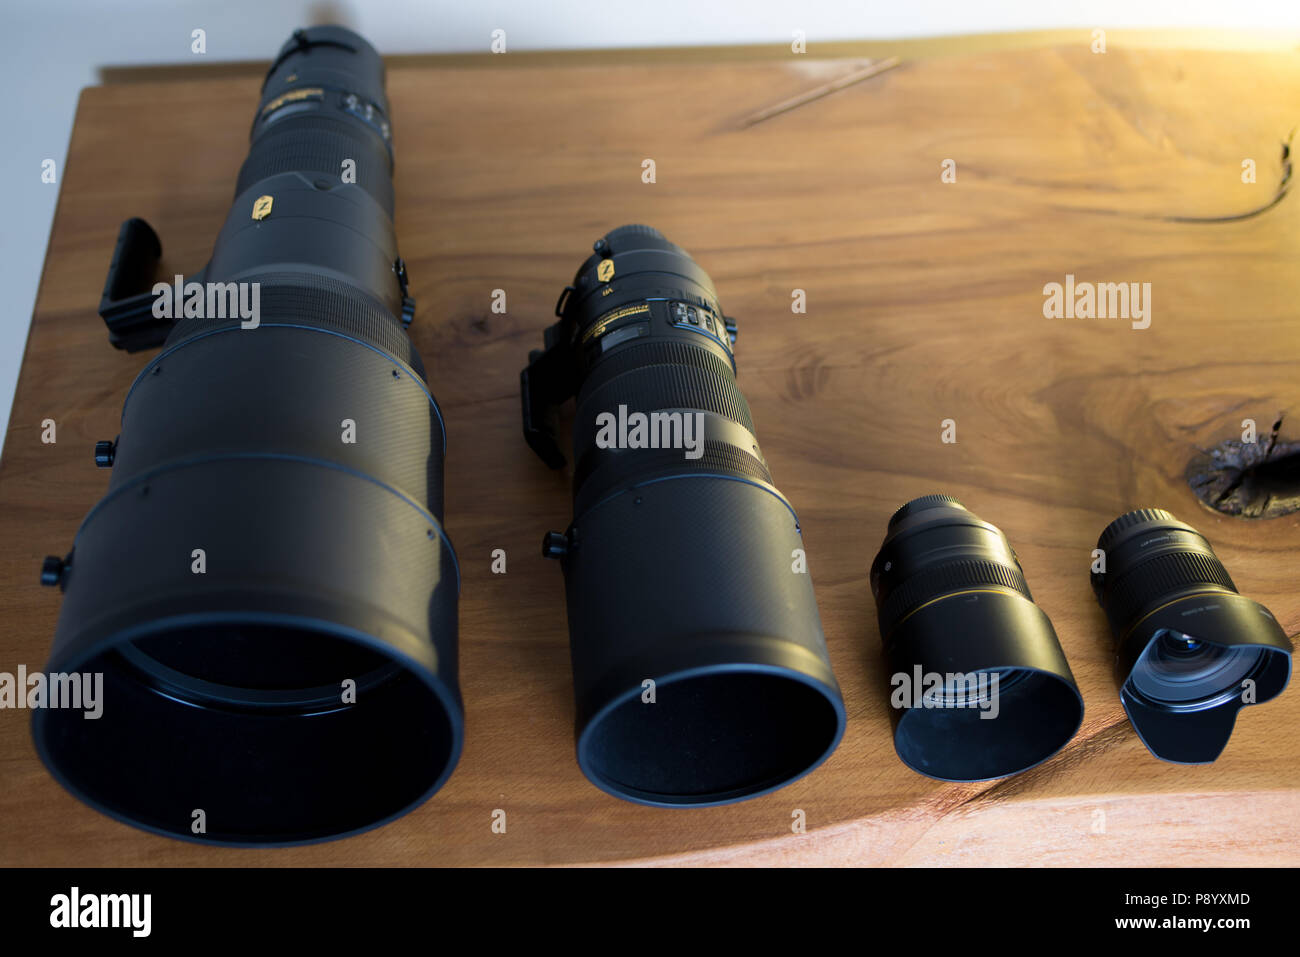 Plasticidad barbilla nivel 4 camaras fotografías e imágenes de alta resolución - Alamy